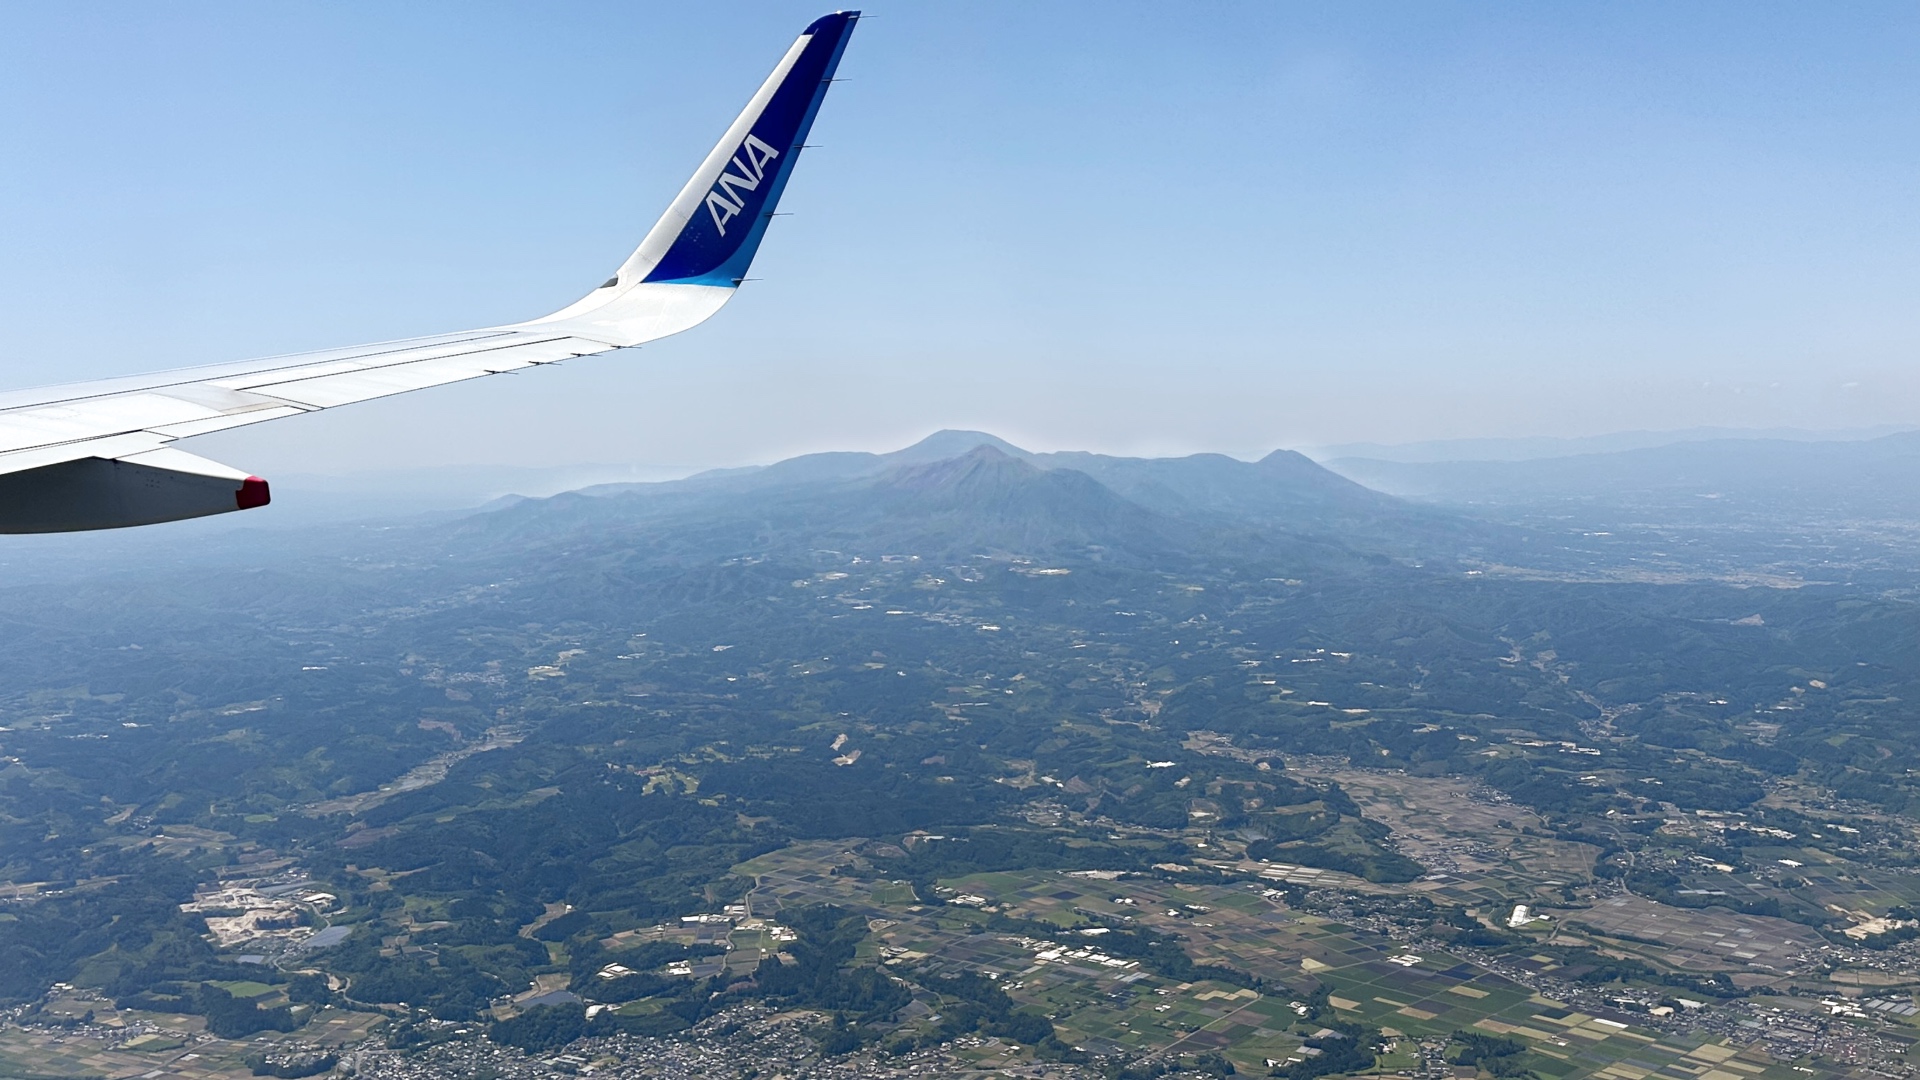 Ankunft in Kyushu: Die vulkanische Kirishima-Bergkette vor der Landung auf dem Flughafen Kagoshima.